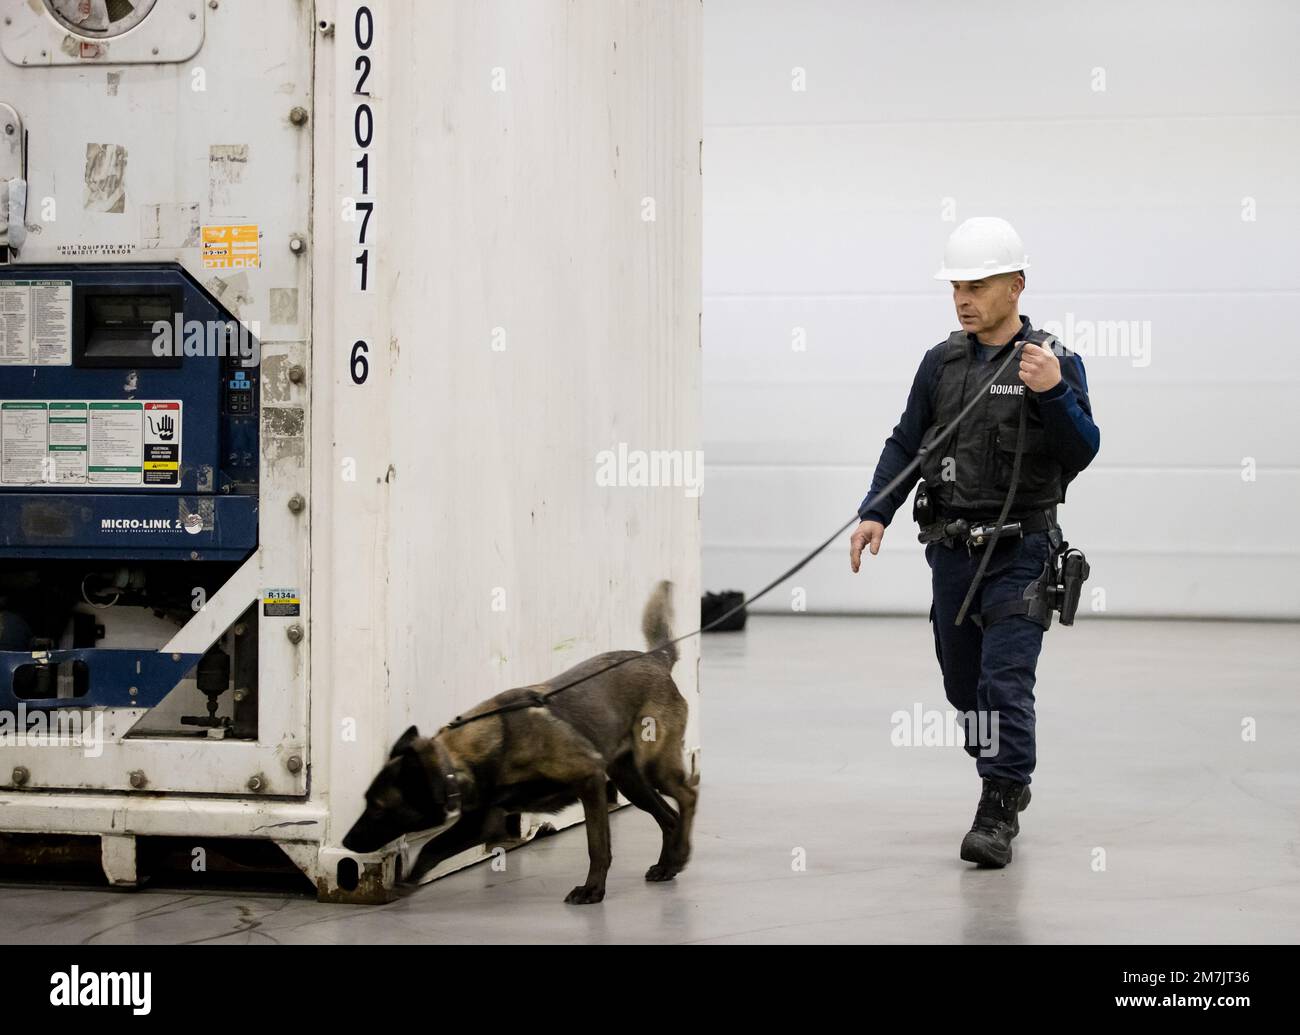 ROTTERDAM - Un chien sniffer lors d'une présentation par l'équipe d'assistance spéciale lourdement armée des autorités douanières. L'équipe lutte contre la criminalité liée à la drogue dans le port de Rotterdam. ANP SEM VAN DER WAL pays-bas sortie - belgique sortie Banque D'Images